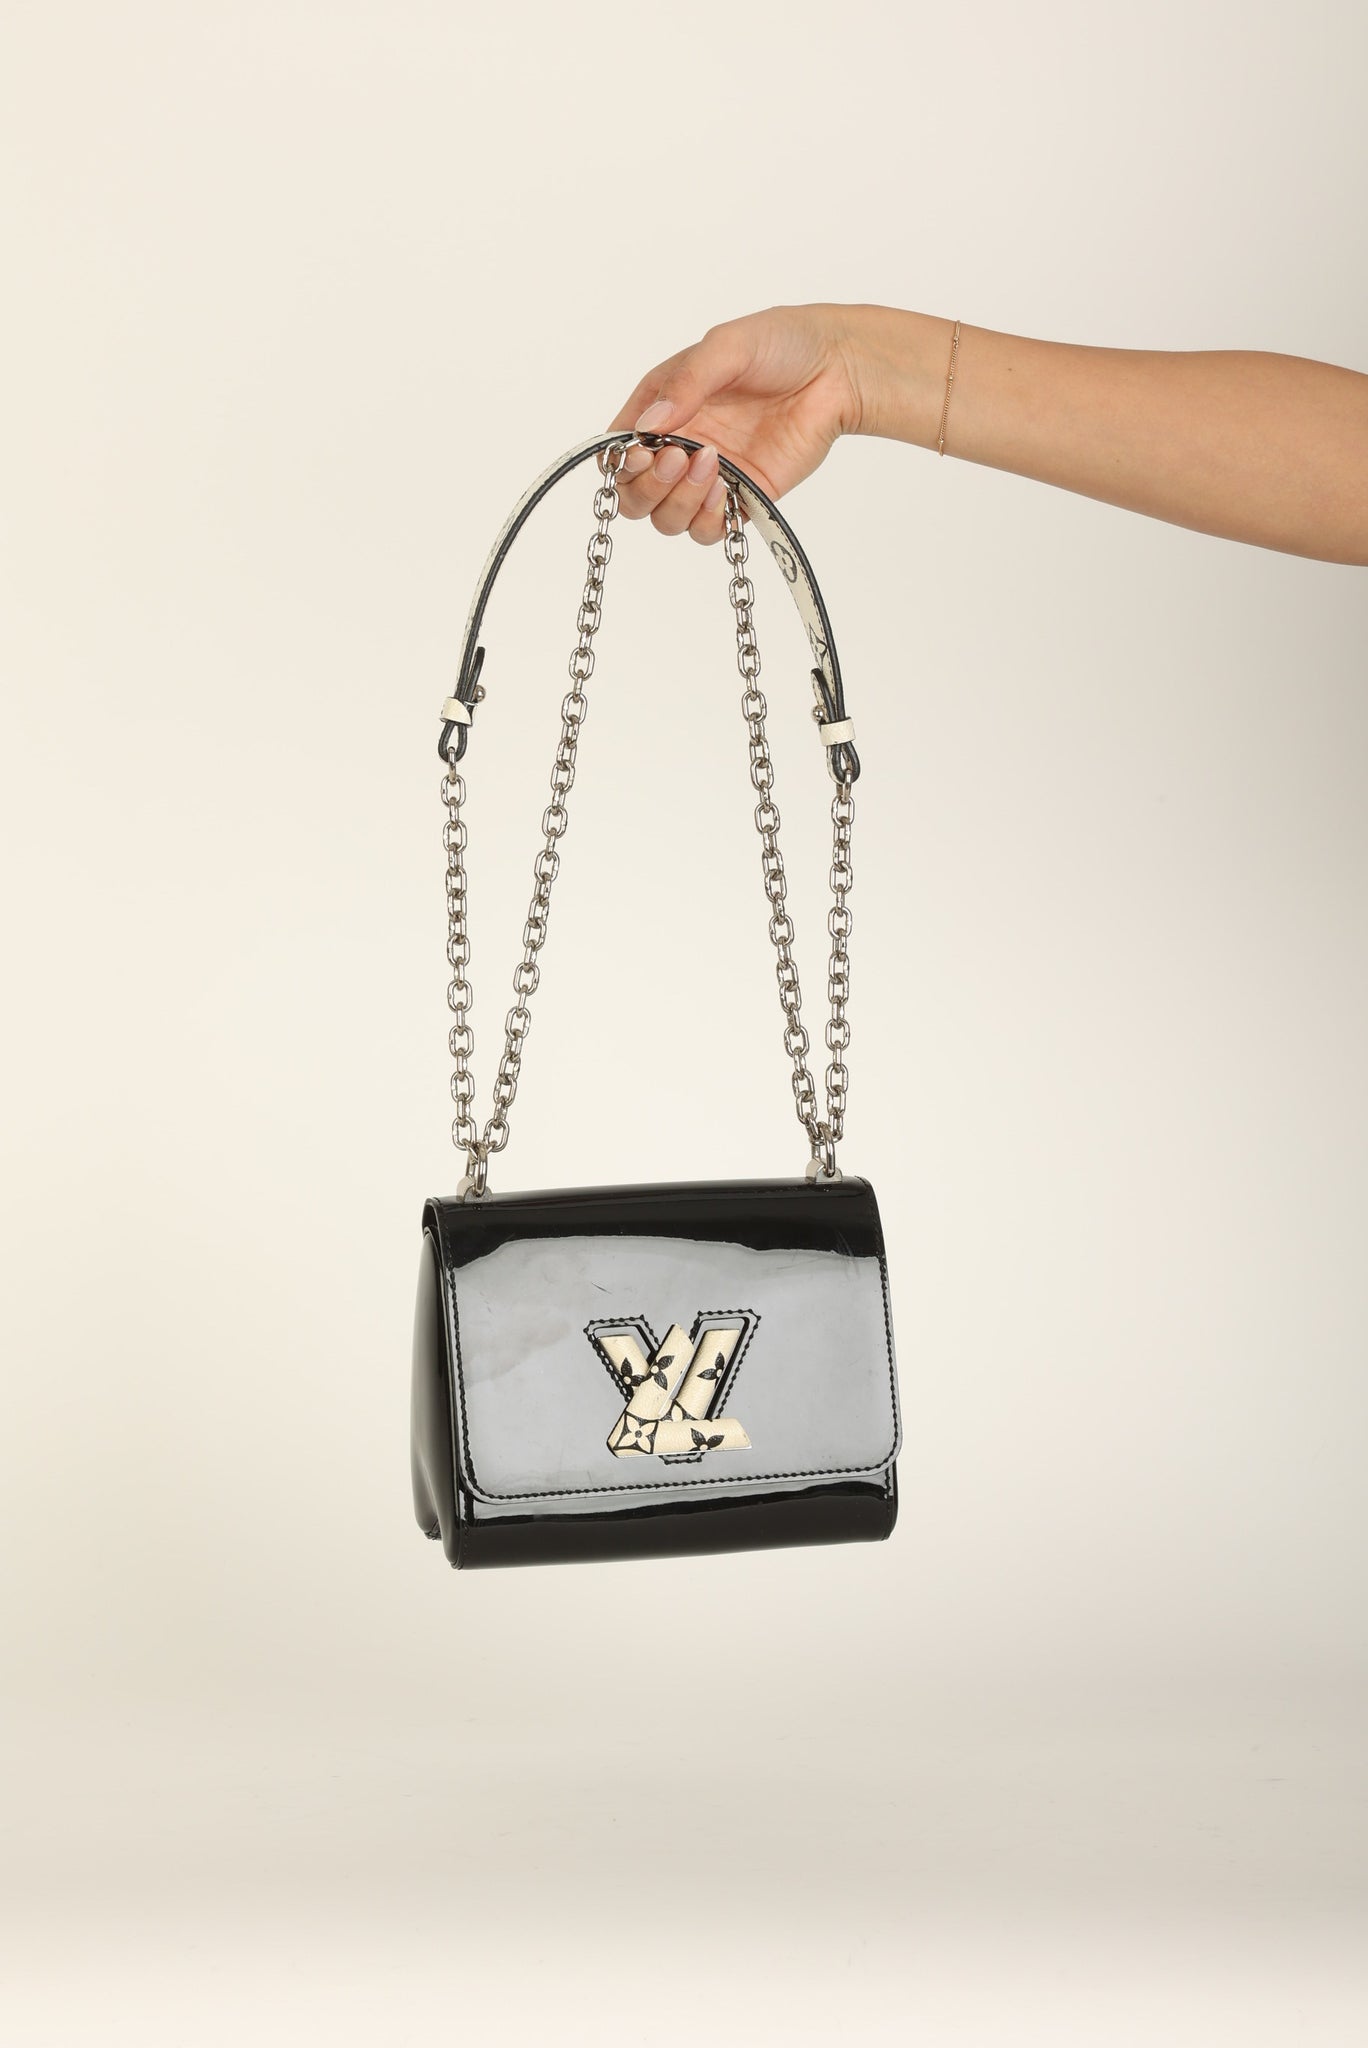 Louis Vuitton Vernis Twist Flap Bag